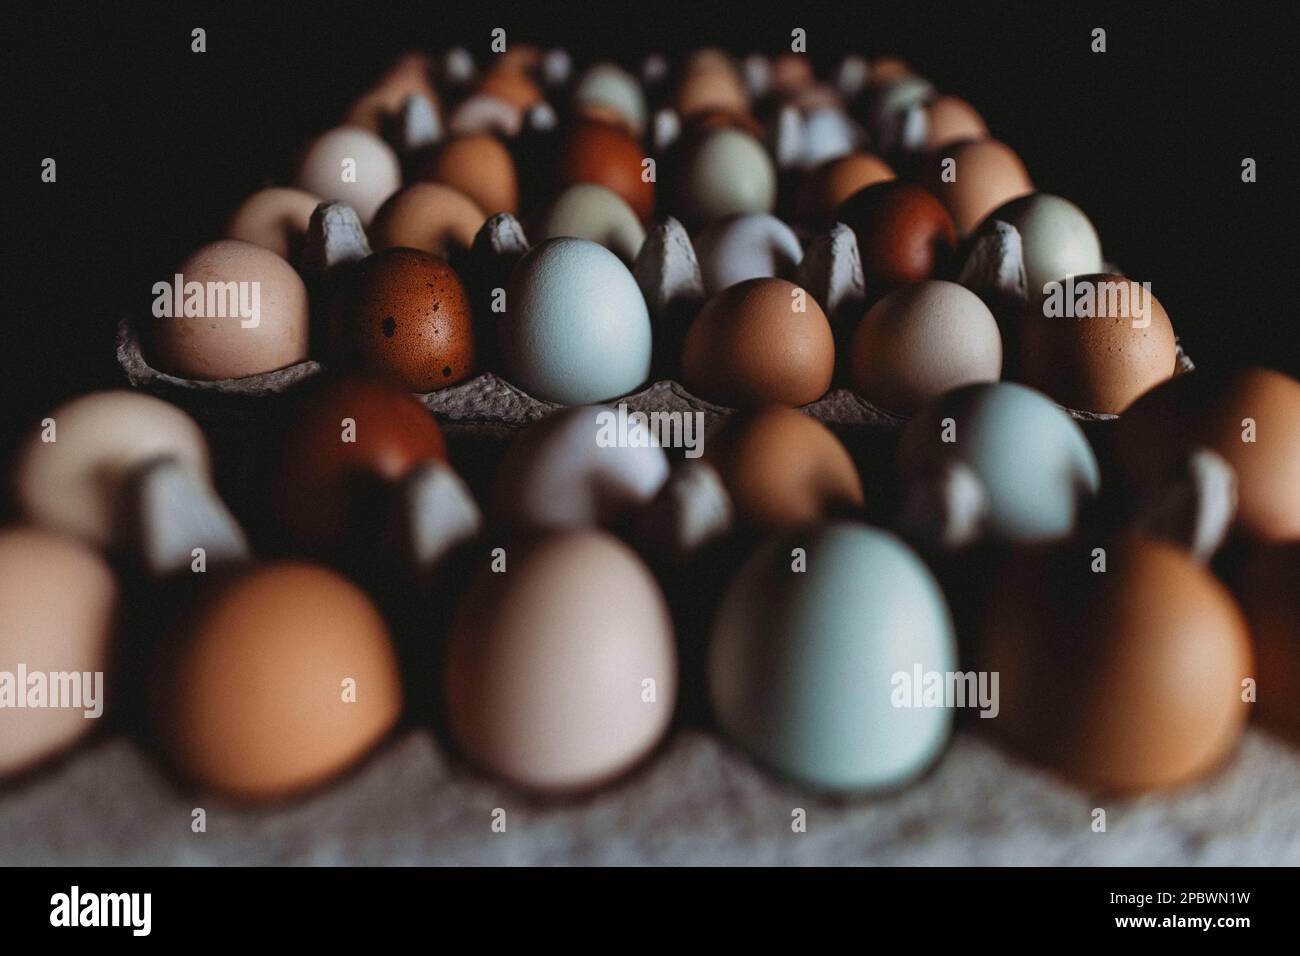 Farbenfrohe Reihen frischer Eier vom Bauernhof Stockfoto